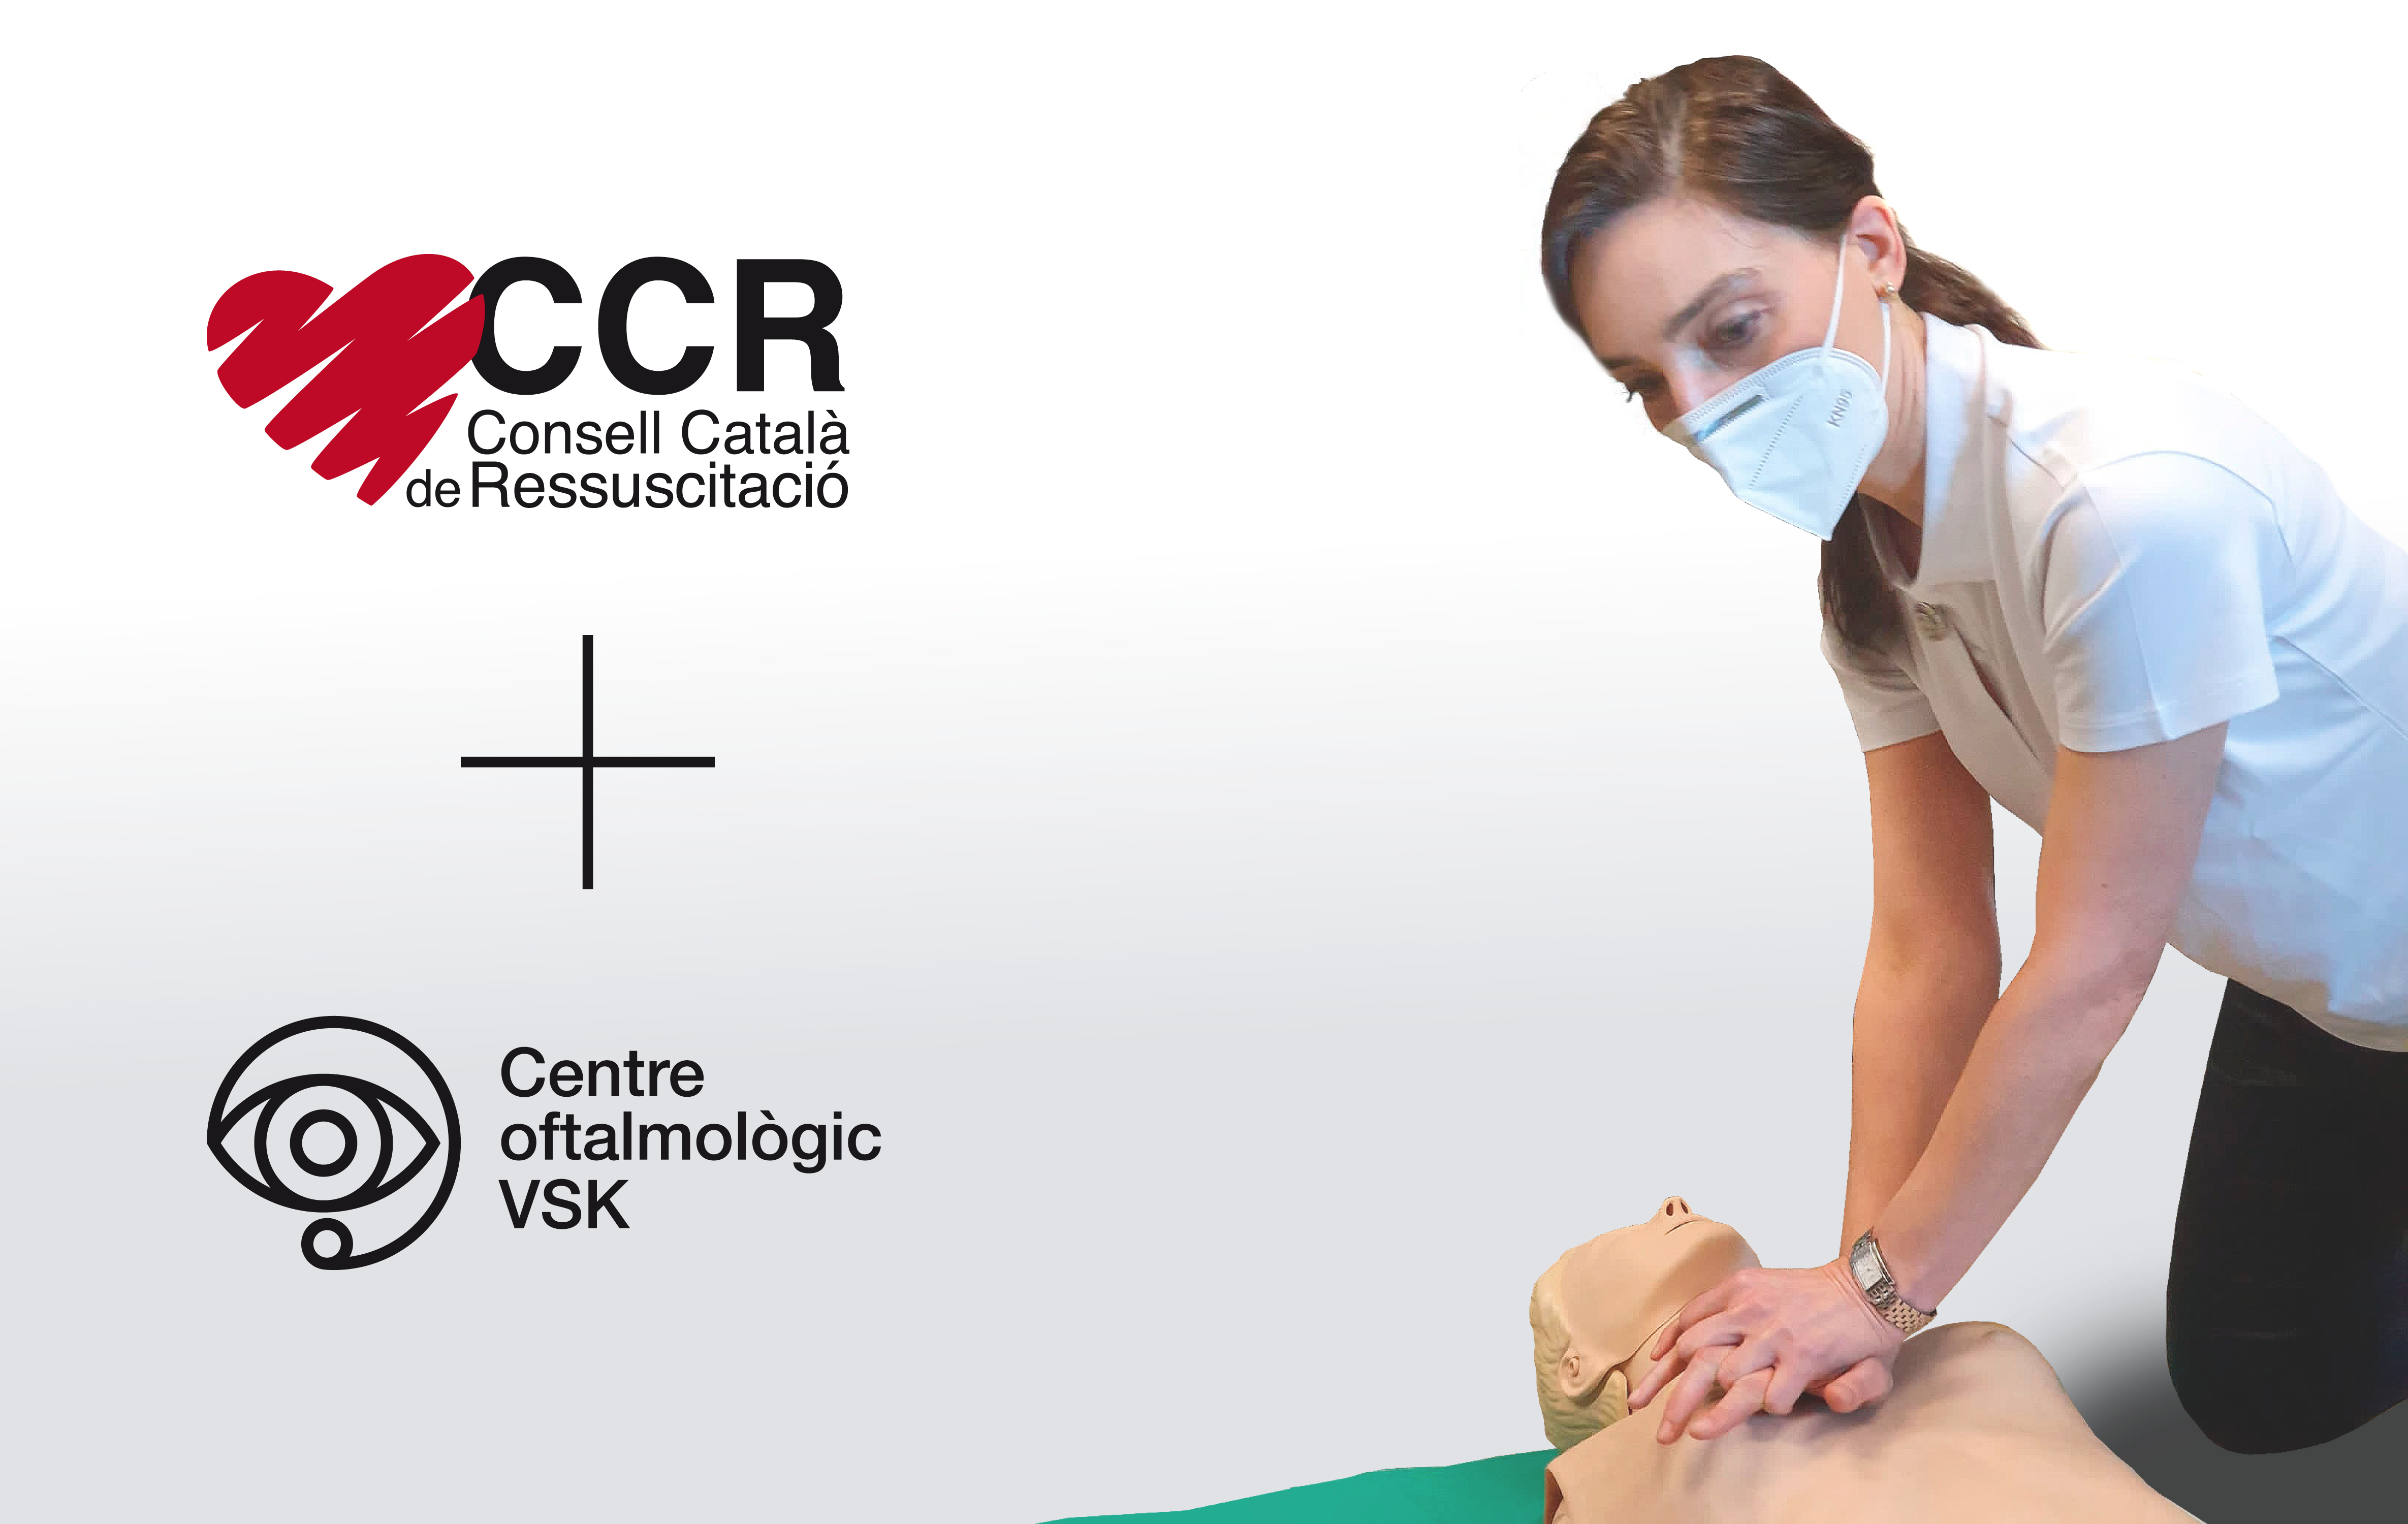 Consell Català de ressuscitació i Centre oftalmològic VSK